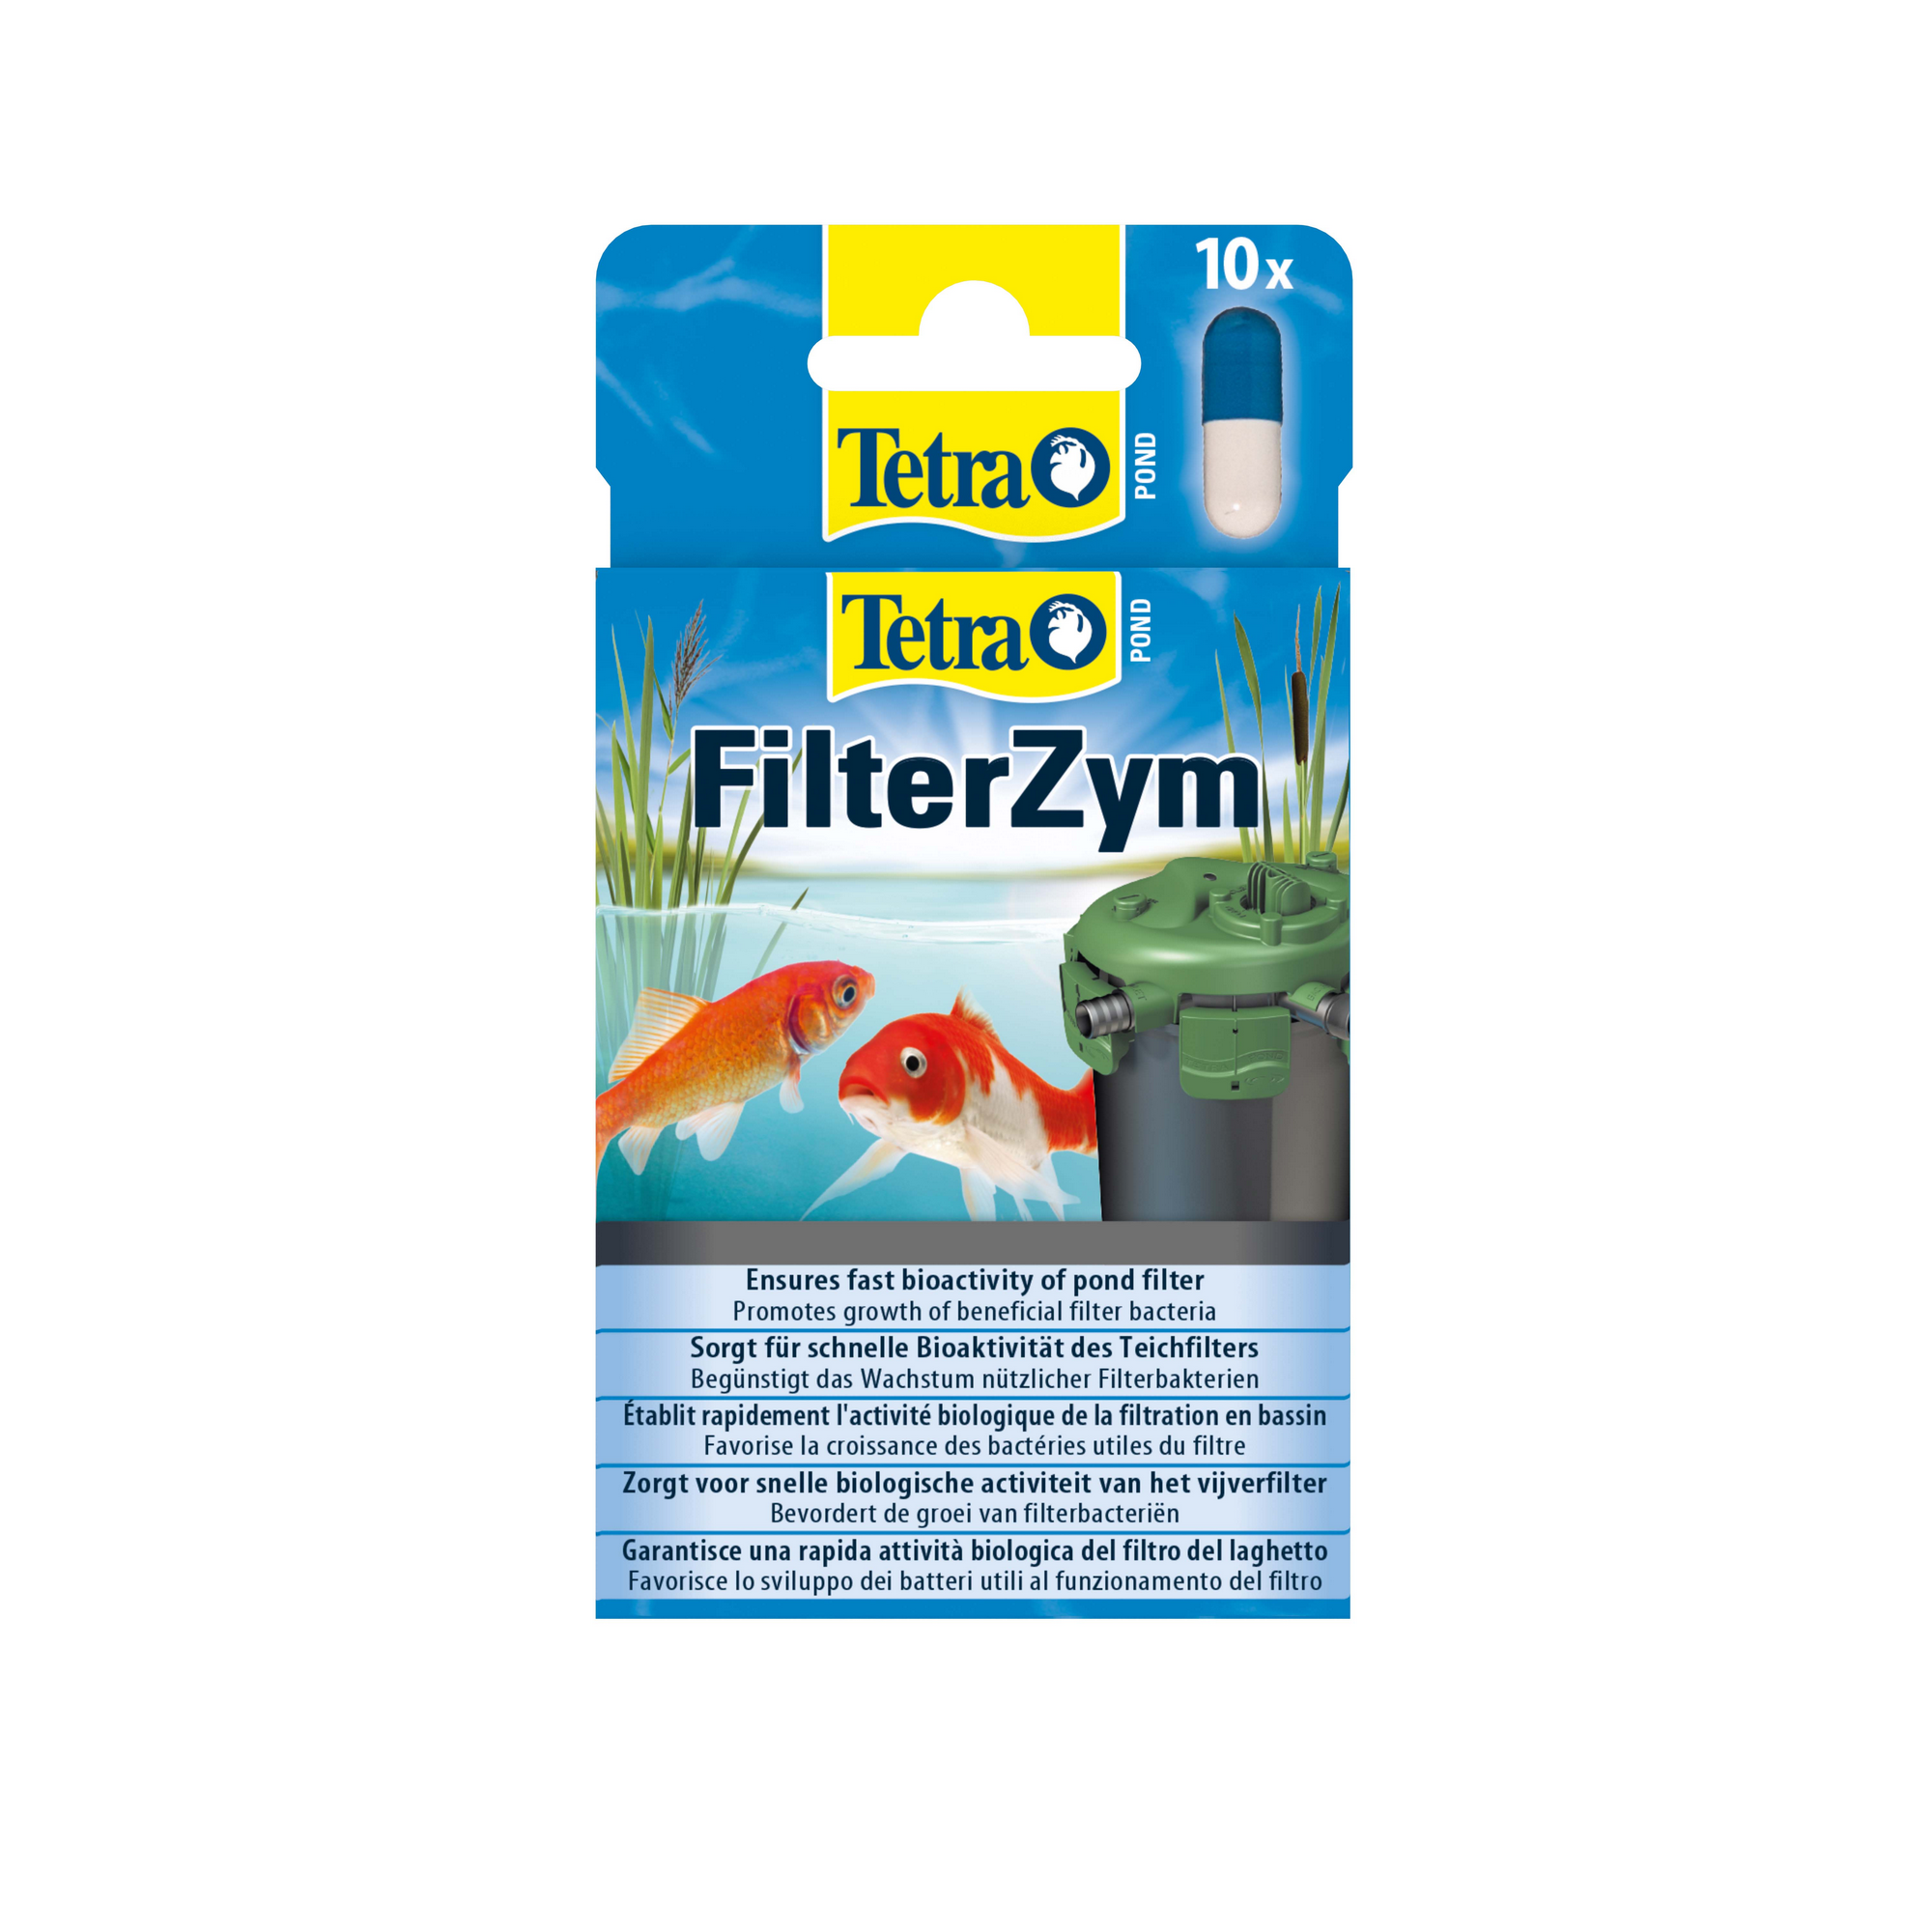 Wasseraufbereiter "FilterZym" 10 Stück + product picture